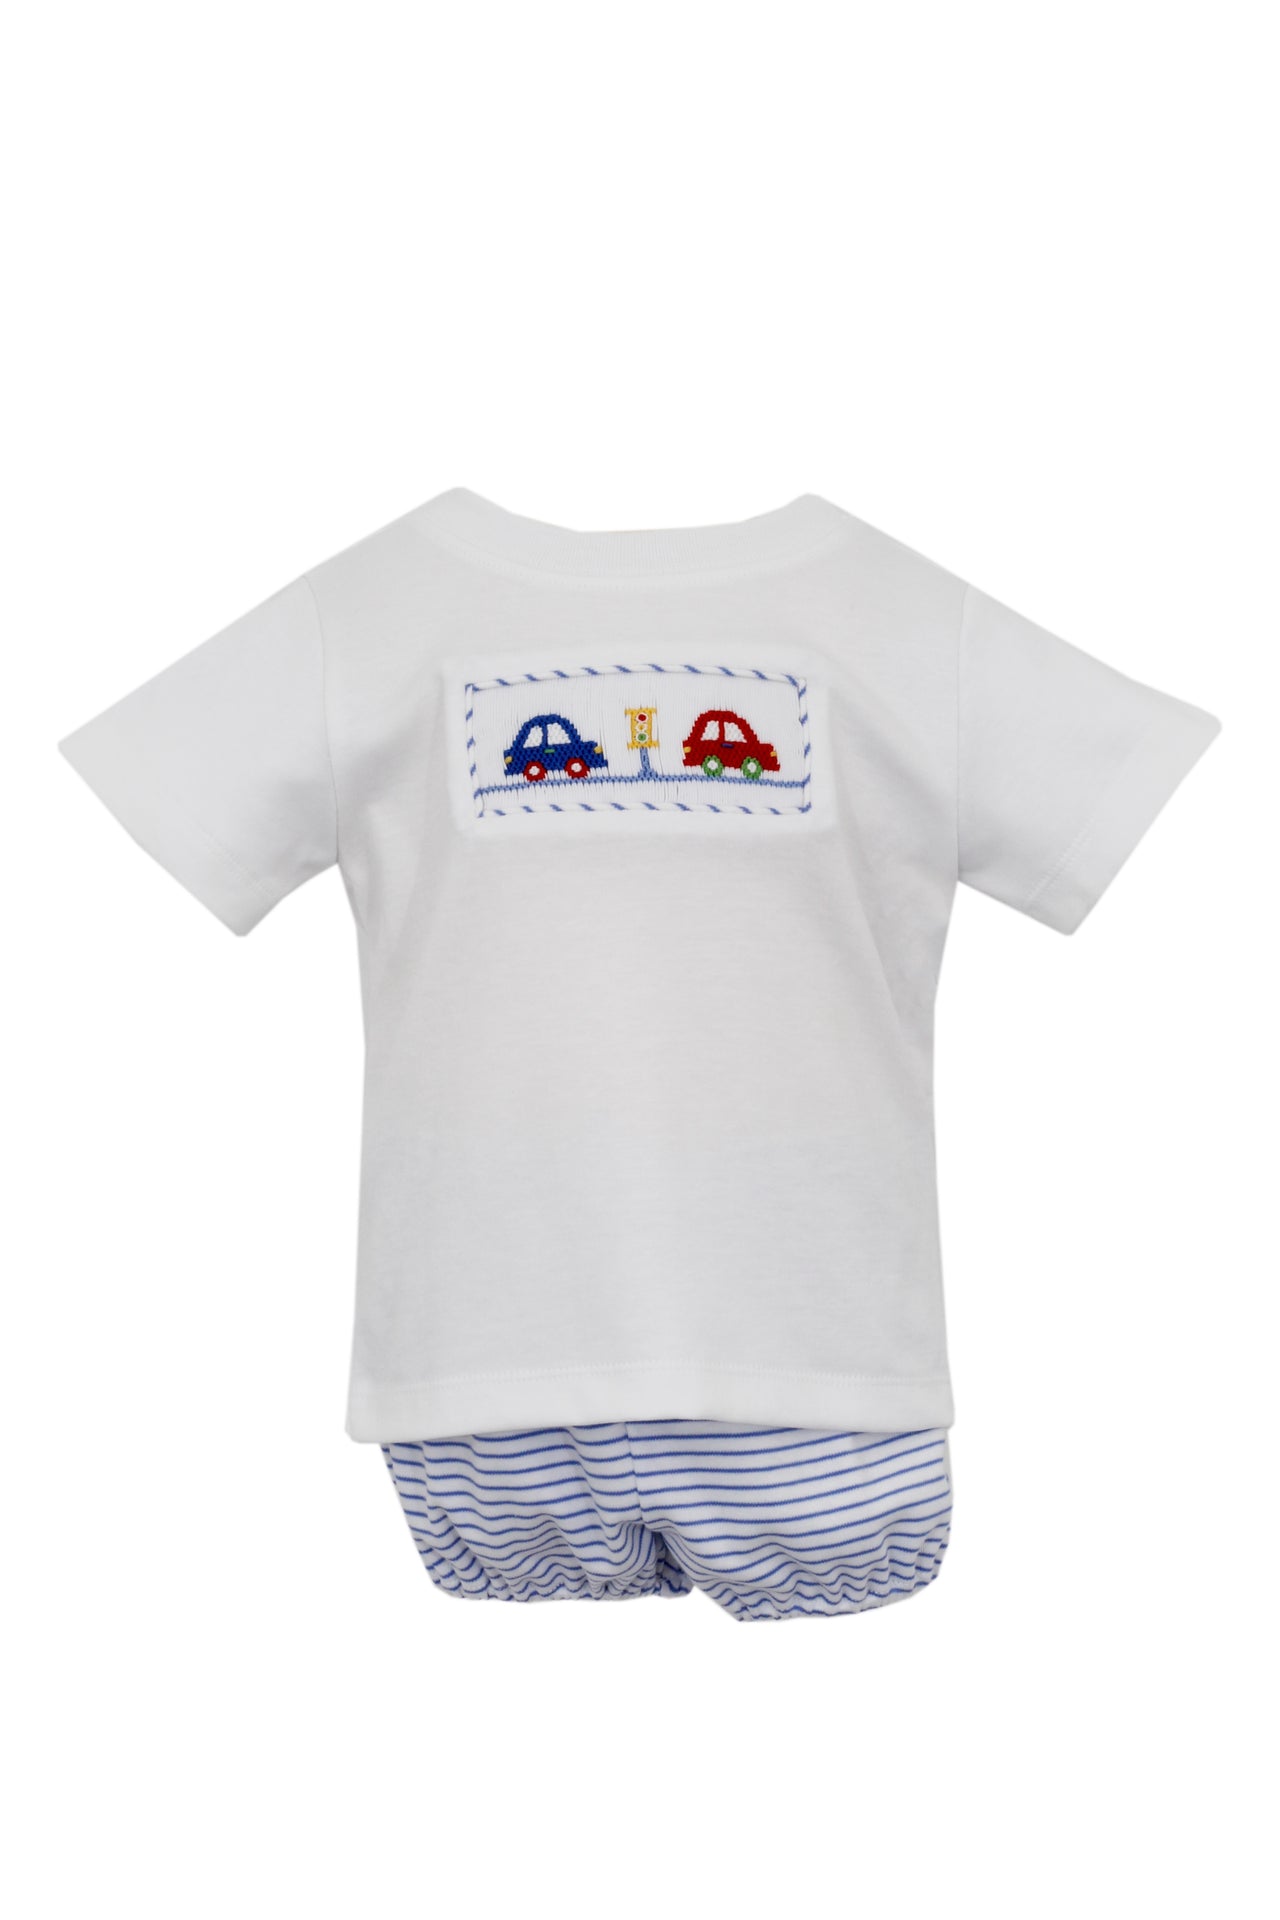 Petit Bebe Cars Royal Blue Stripe Knit boy's T-Shirt Set 436M-MS24 5103